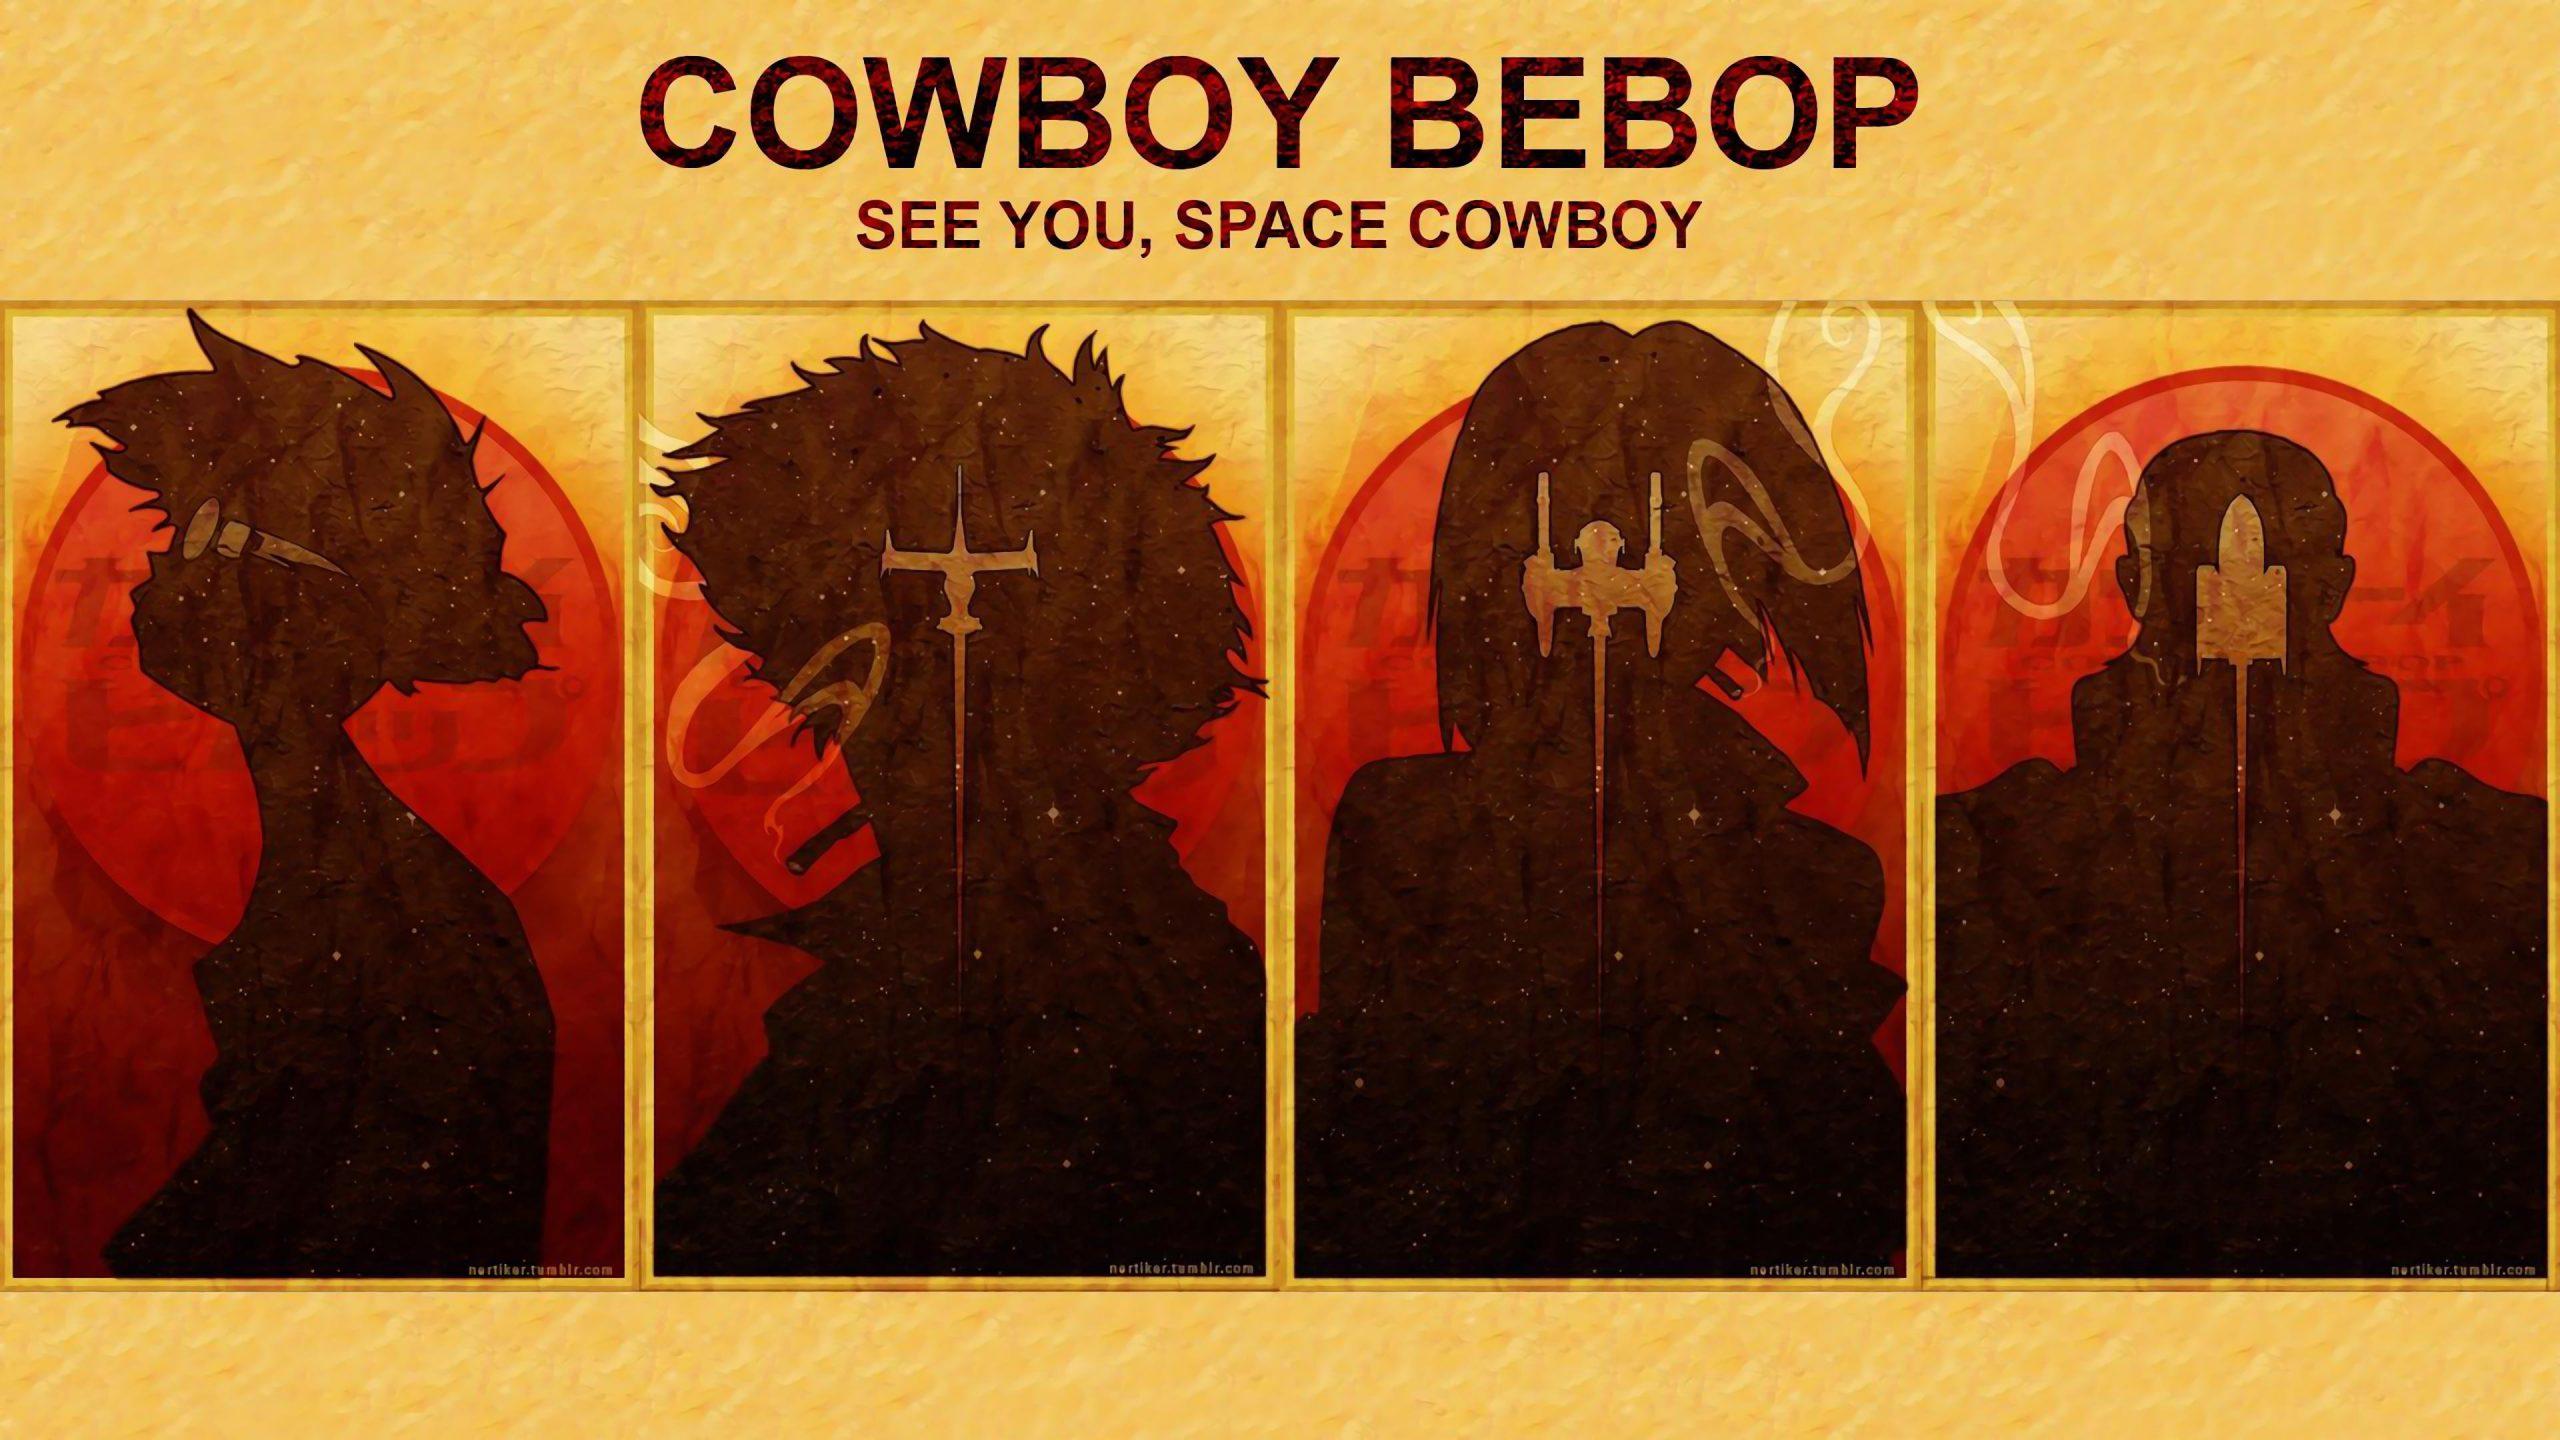 John Cho As Spike Spiegel Hd Cowboy Bebop Wallpapers